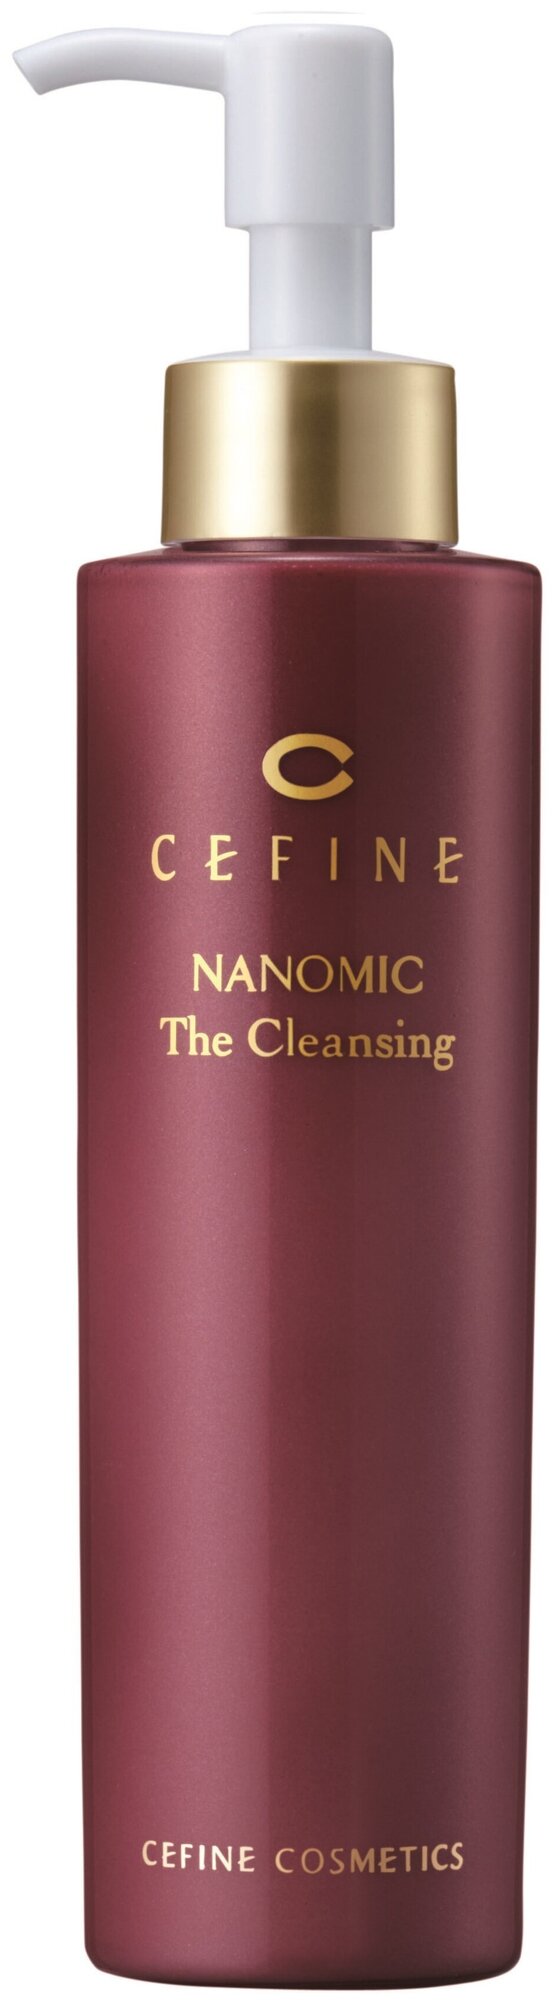 Сыворотка для лица очищающая CEFINE Nanomic The Cleansing 150г